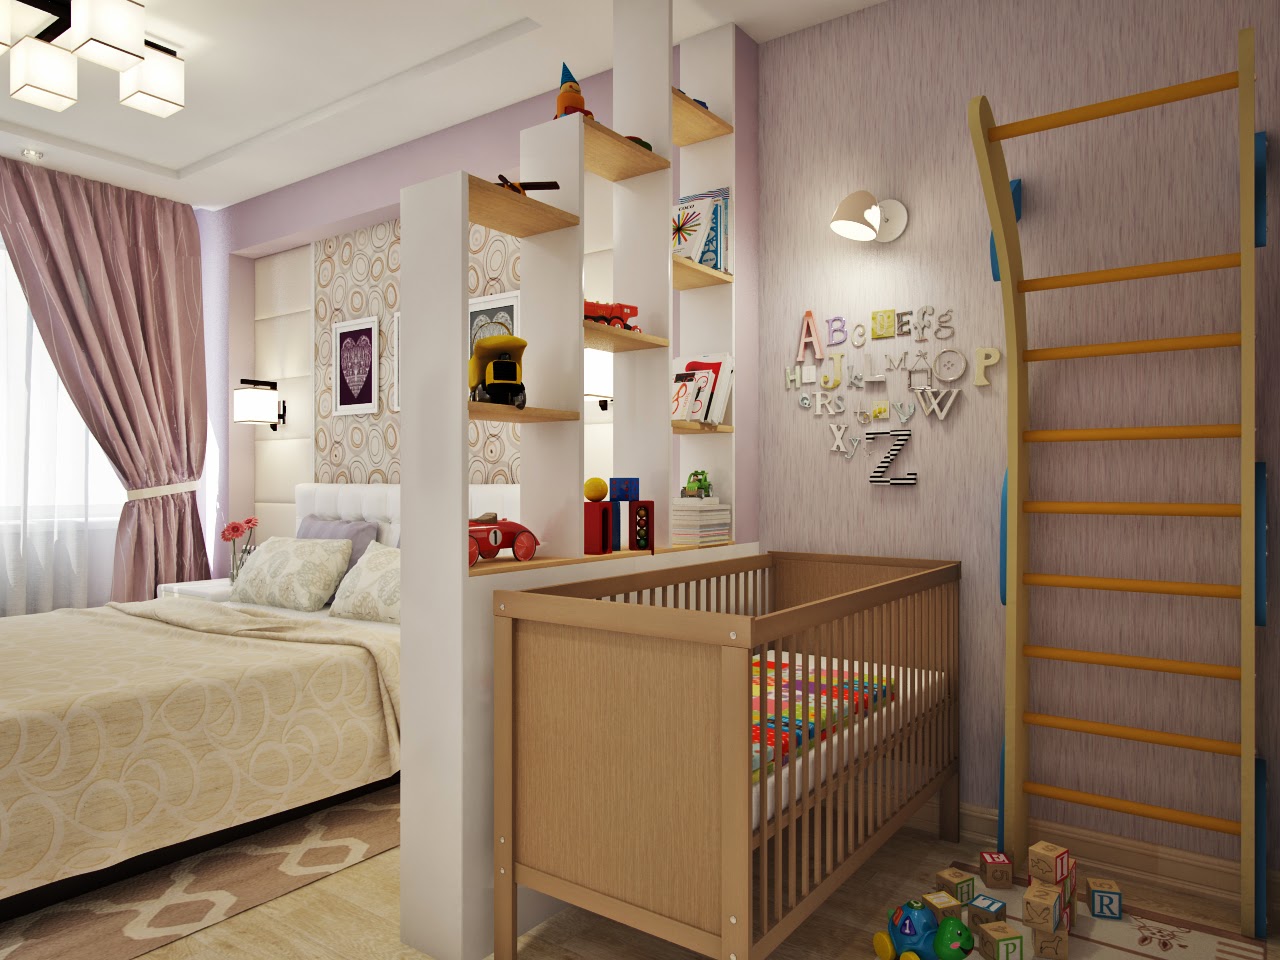 Как изменить родительскую спальню к появлению малыша?